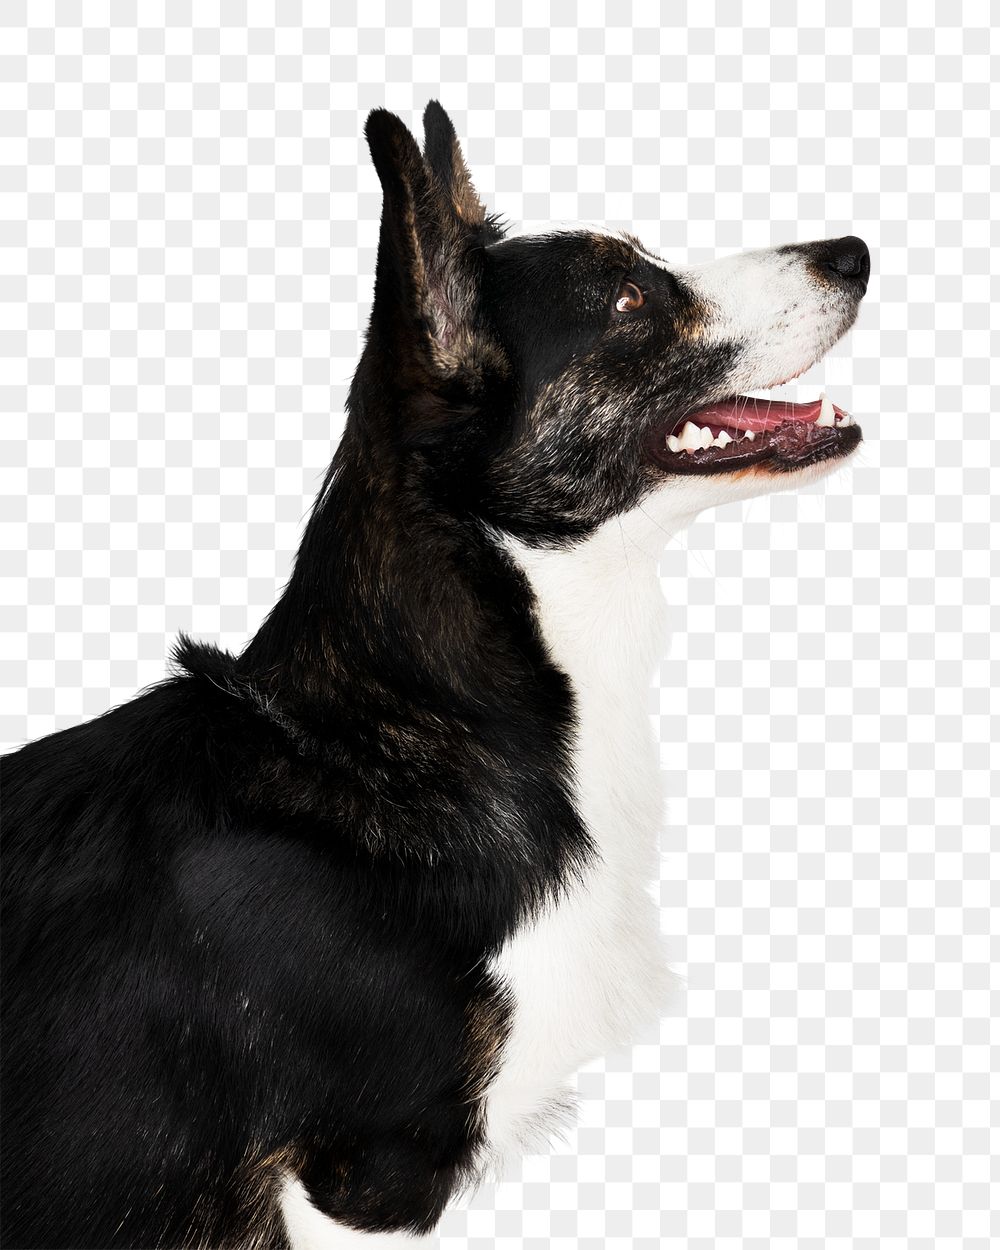 Png dog sticker, Cardigan Welsh Corgi collage element on transparent background